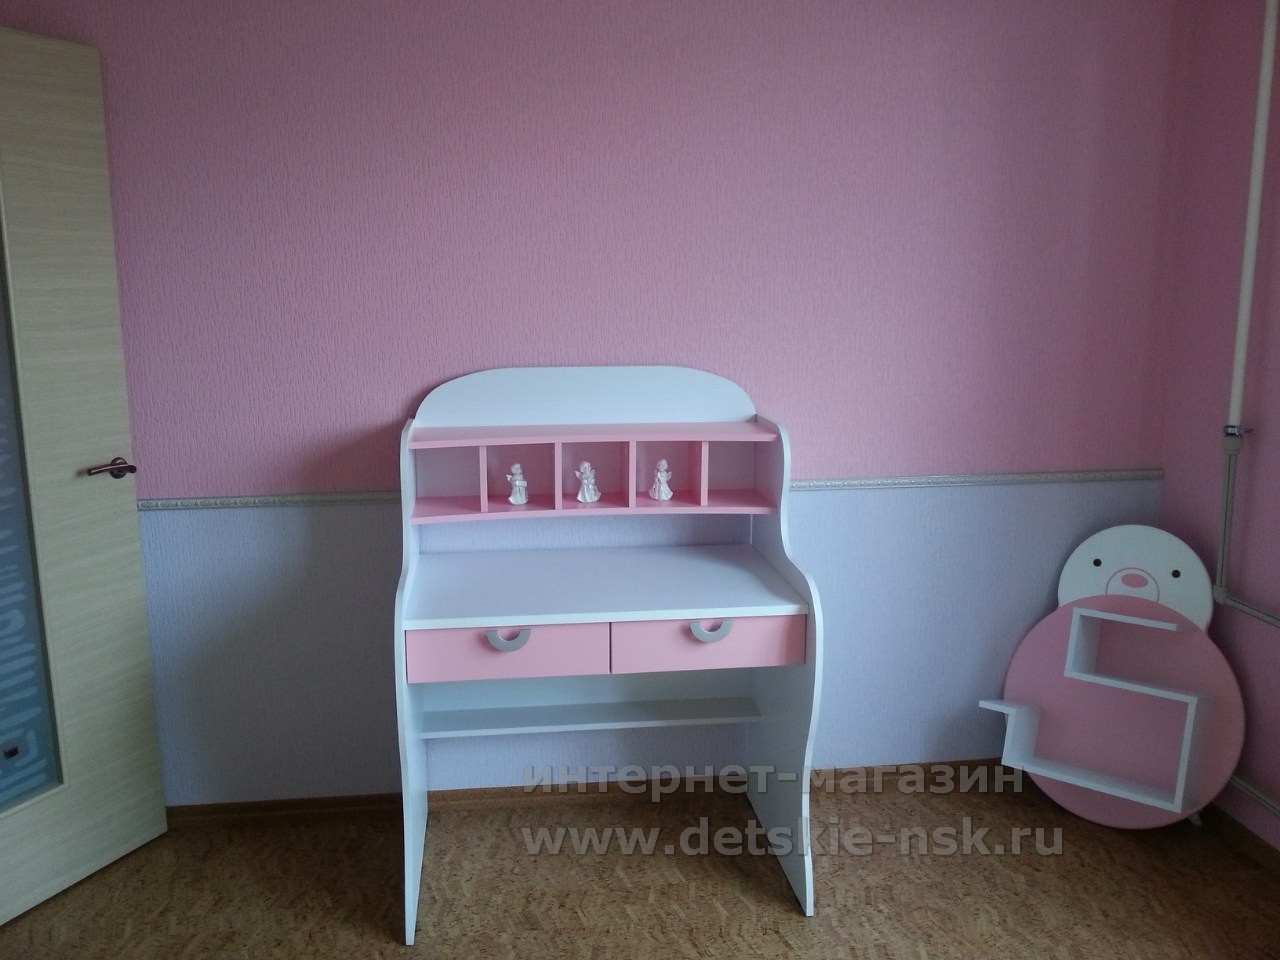 Комната  для девочки "Зайка" в реальном интерьере (фото из портфолио интернет-магазина Детские-НСК)  детская мебель для девочки зайка